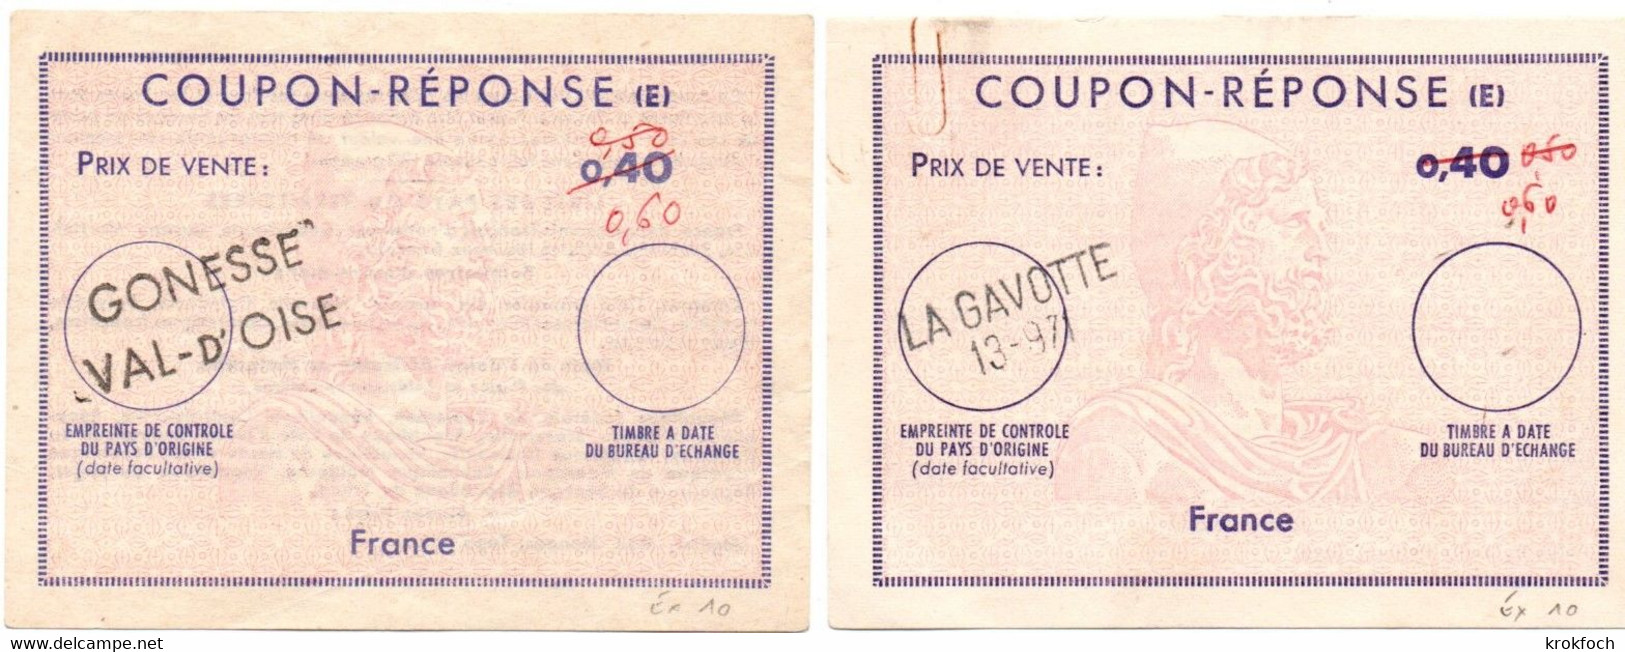 France - 2 Coupon-réponse Type Ex 10 - Griffe La Gavotte 13-971 & Gonesse Val D'Oise - IAS CRI IRC - Coupons-réponse